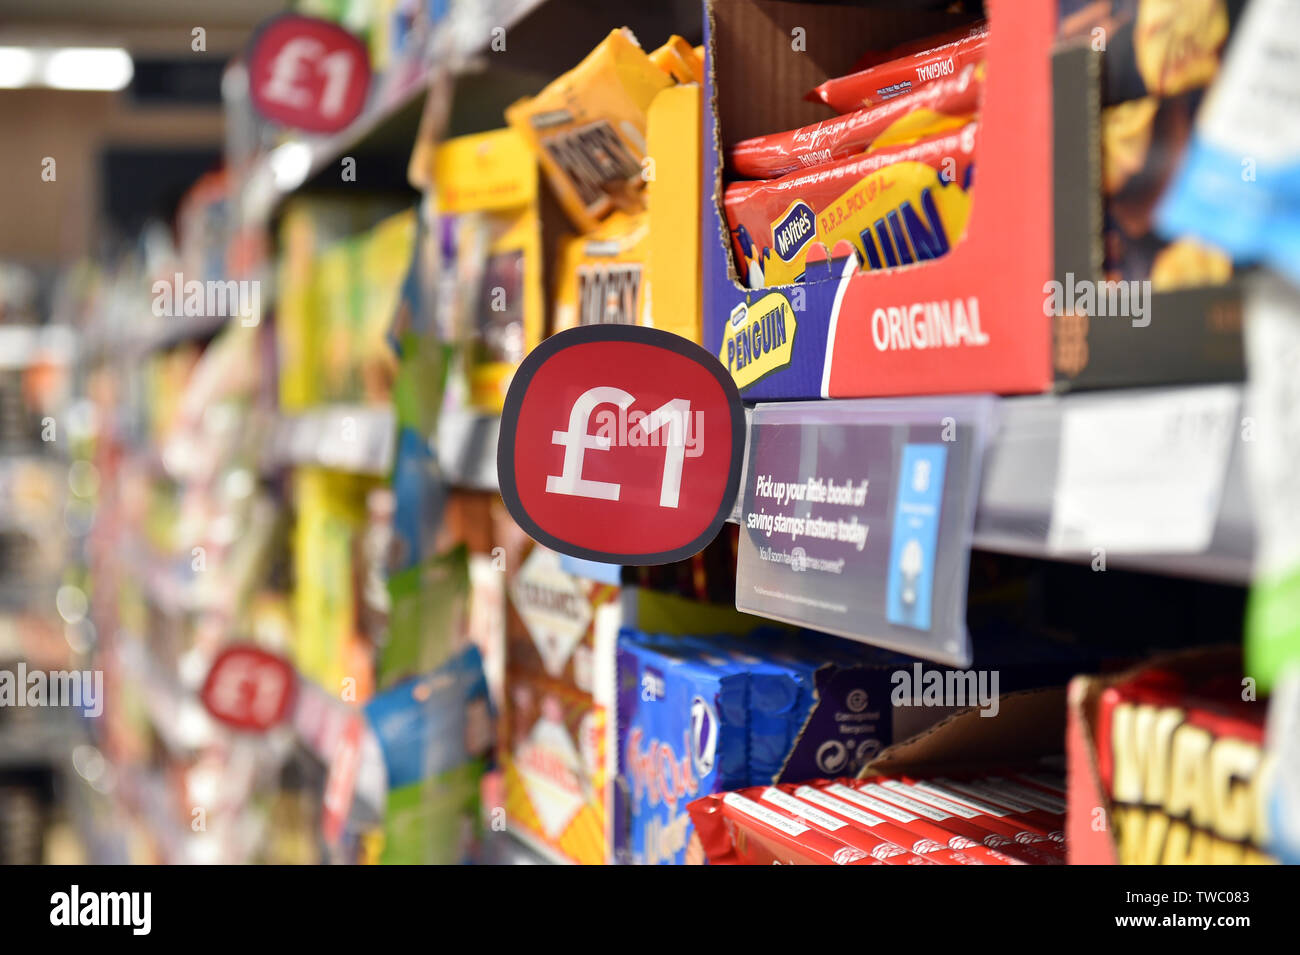 Chocolate por 1 £ en exposición en una estantería de supermercado Reino Unido Foto de stock